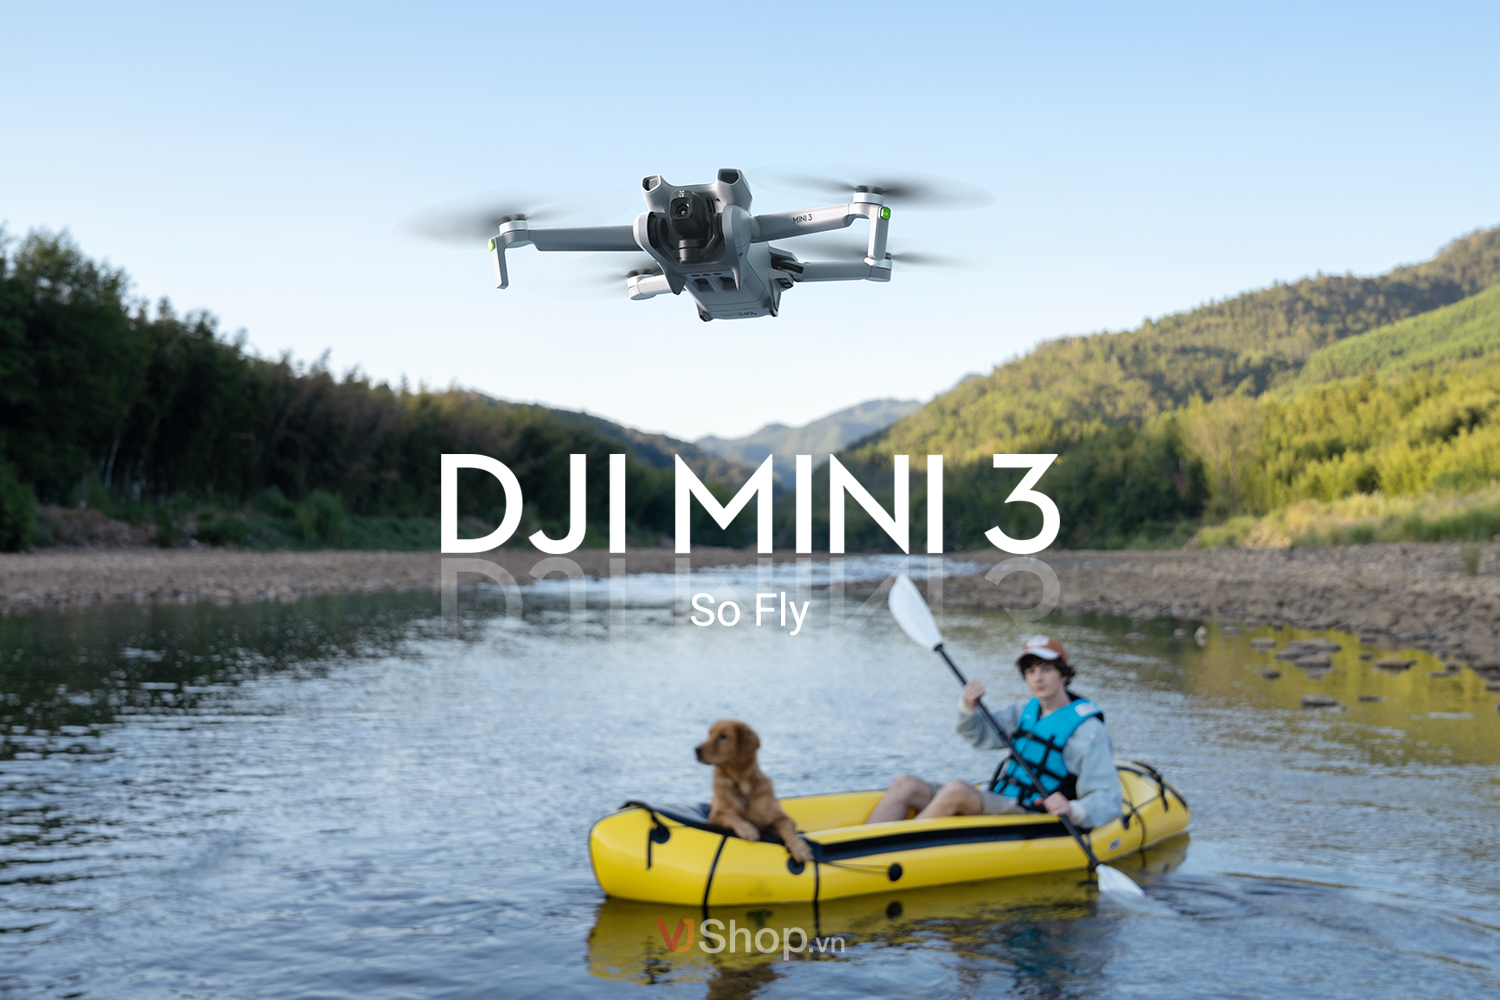 DJI Mini 3 chiếc flycam lý tưởng cho người mới bắt đầu